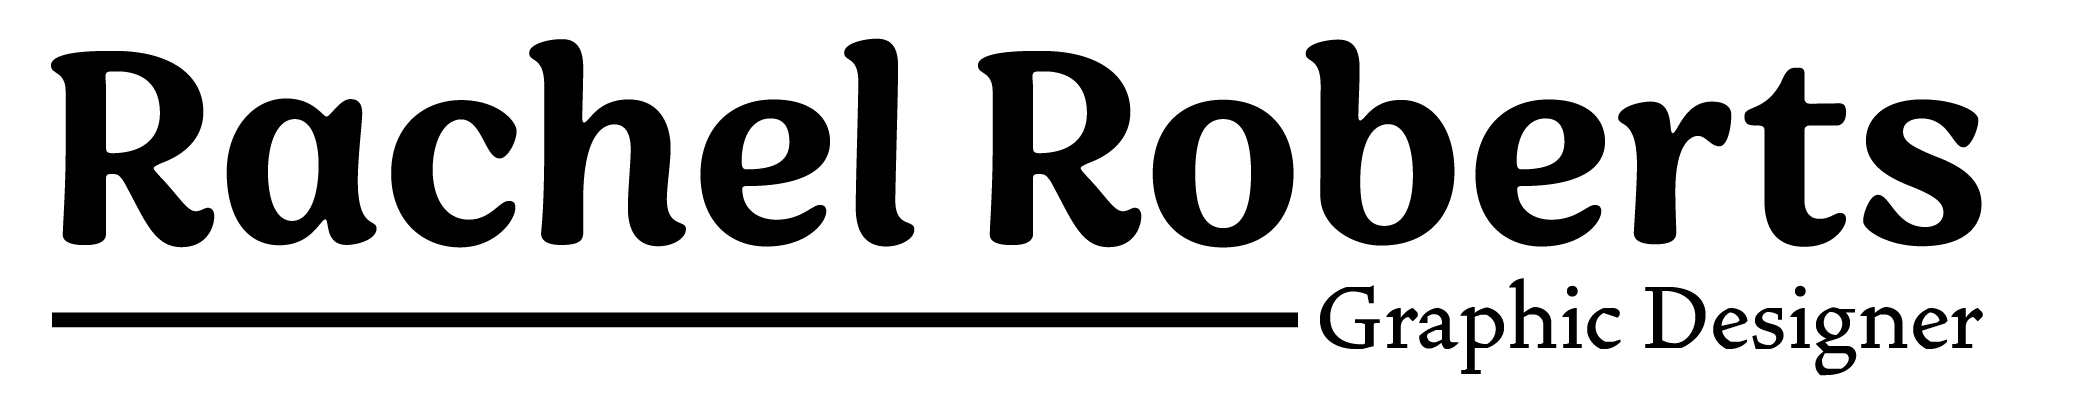 Rachel Roberts Graphic Designer logo